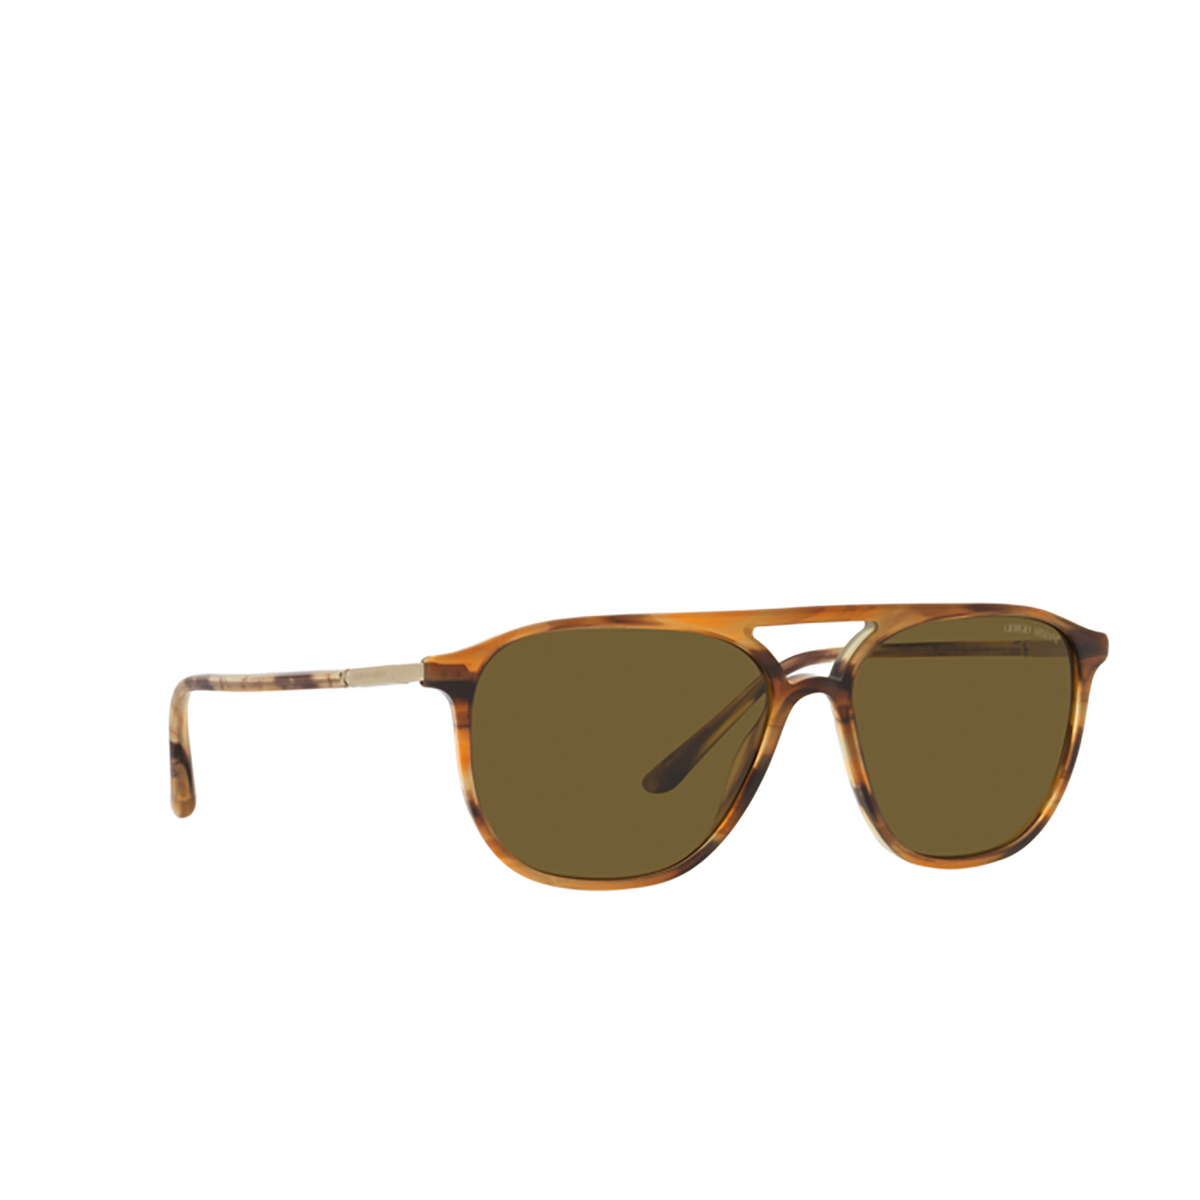 Giorgio Armani AR8179 Sunglasses 600273 Striped brown - three-quarters view